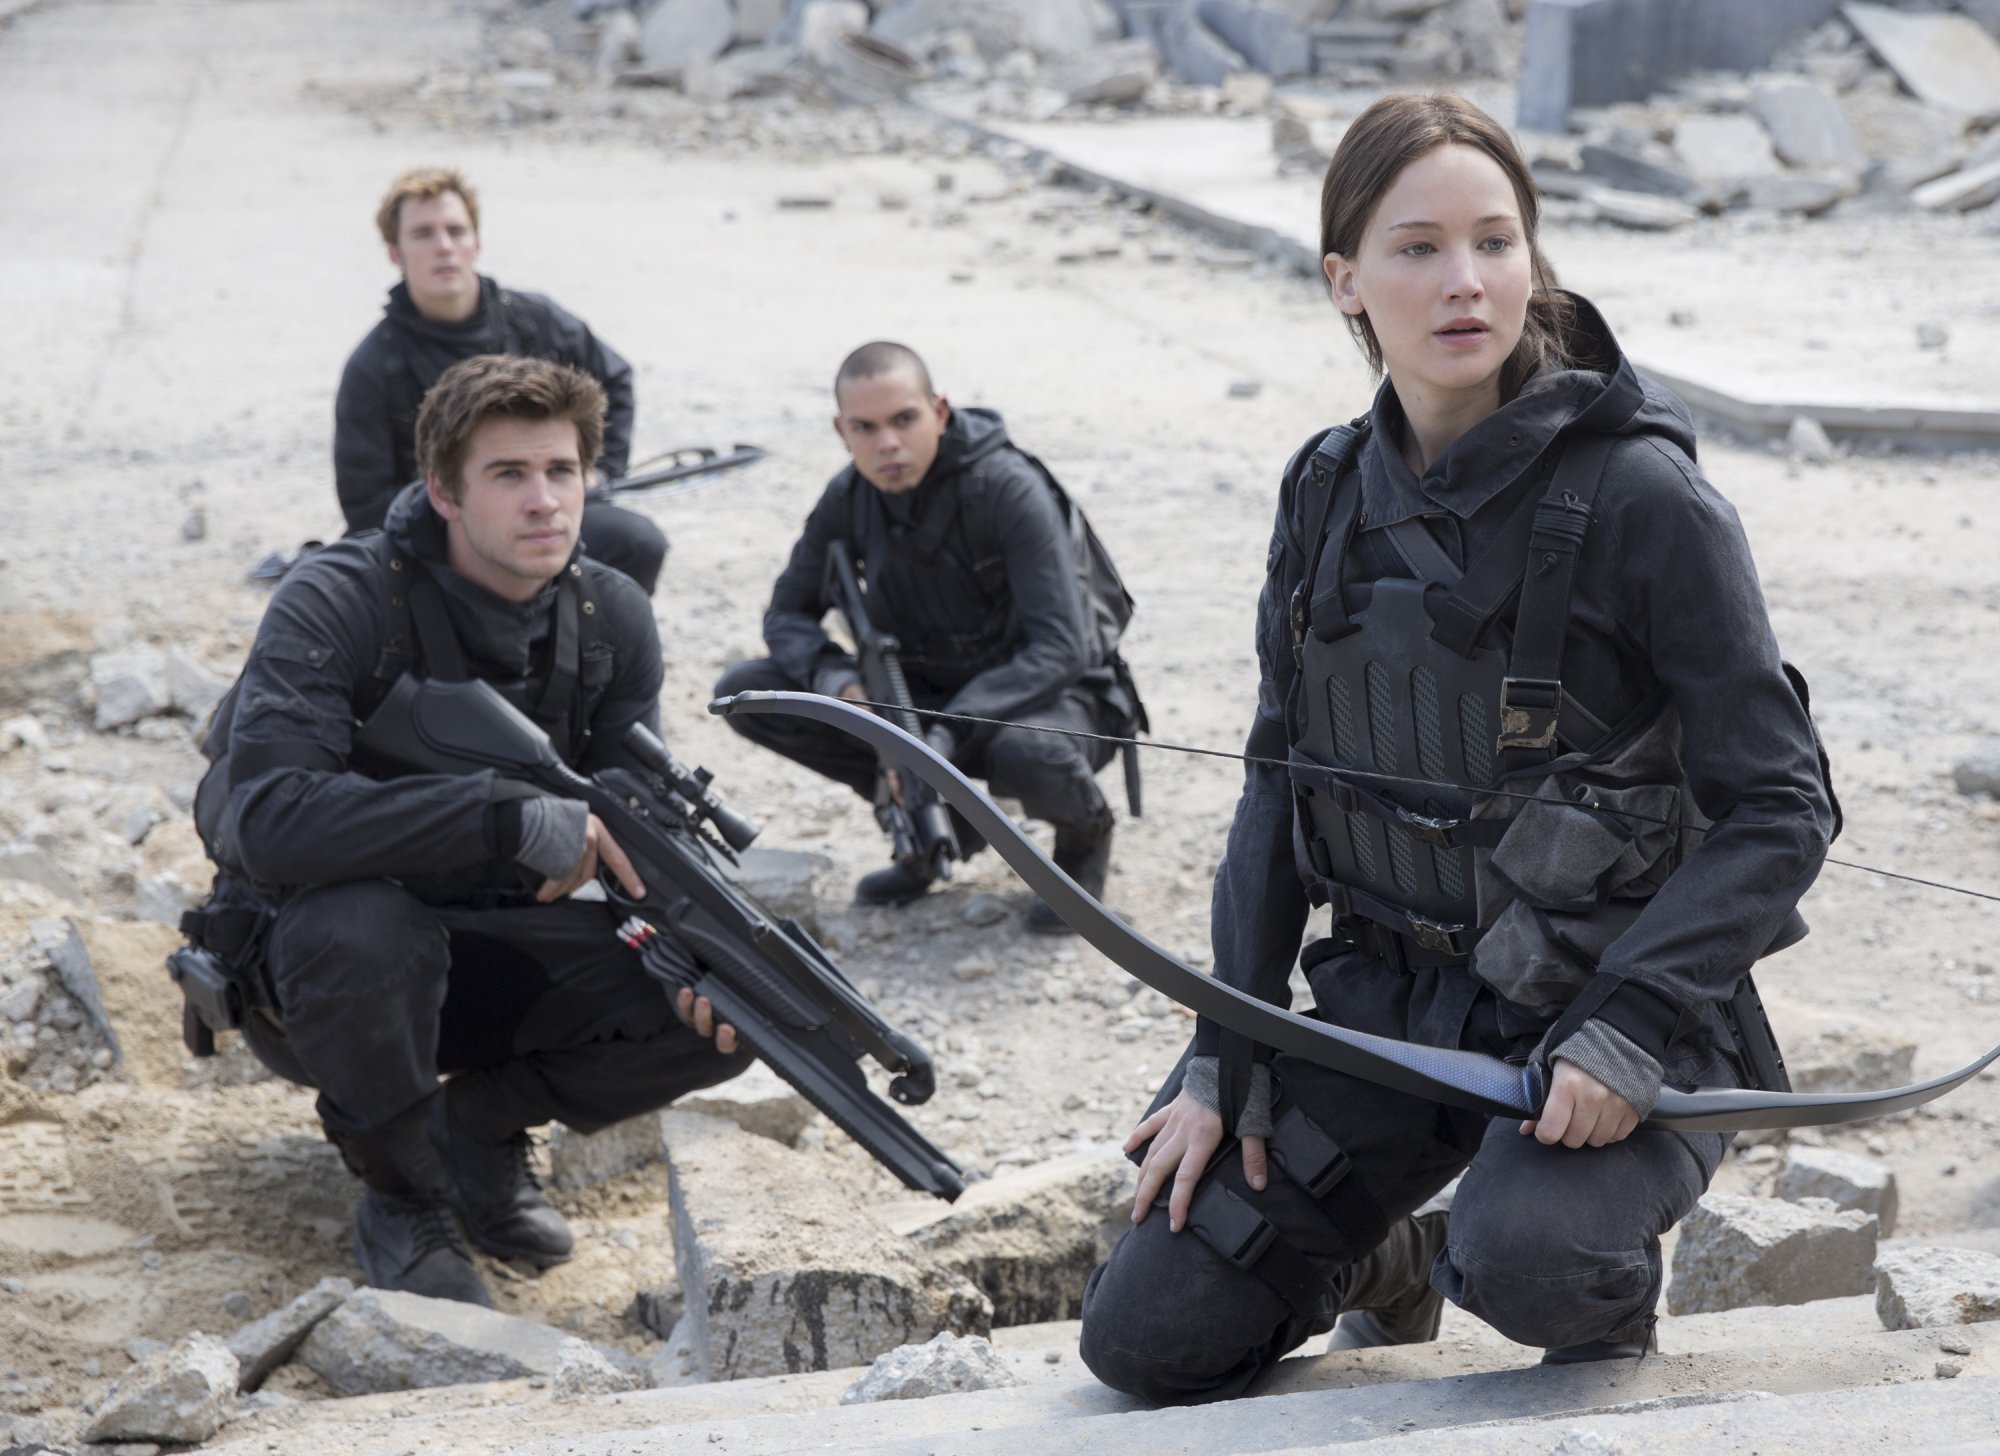 Έρχεται νέο βιβλίο «Hunger Games» - Πότε θα κυκλοφορήσει